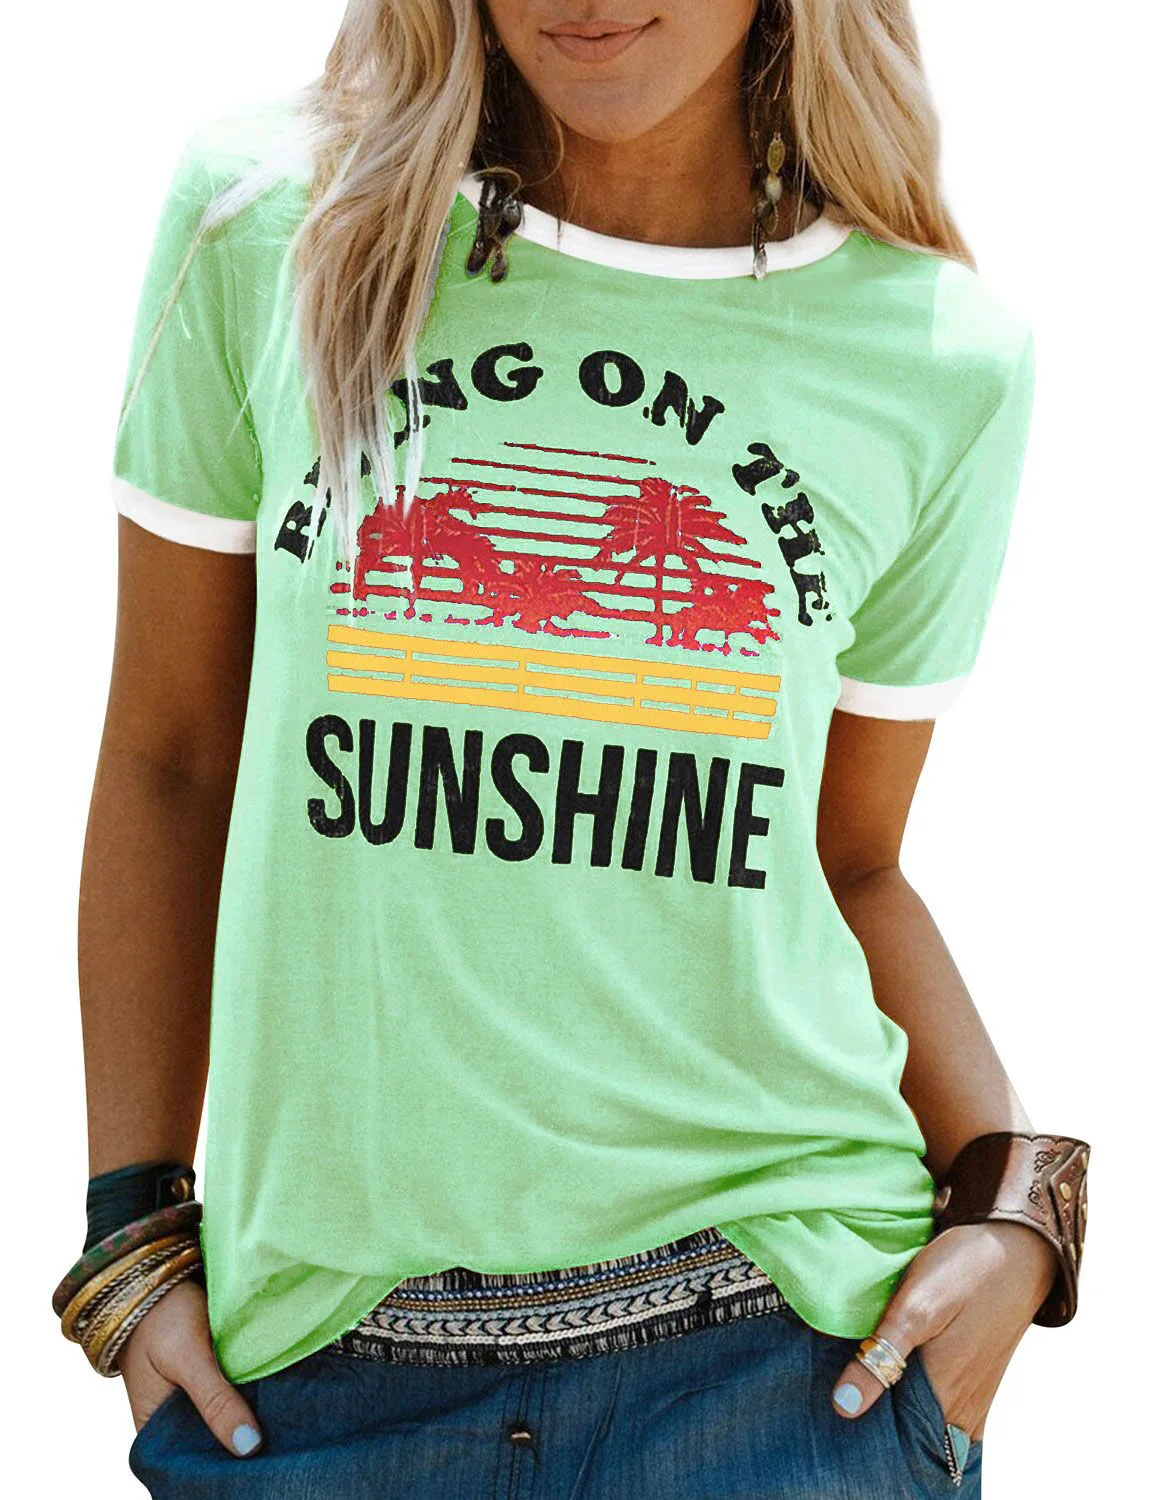 8 цветов Для женщин футболка летние шорты рукав футболки принести на солнце с буквенным принтом Футболки Femme хлопок Harajuku плюс размер - Цвет: Зеленый